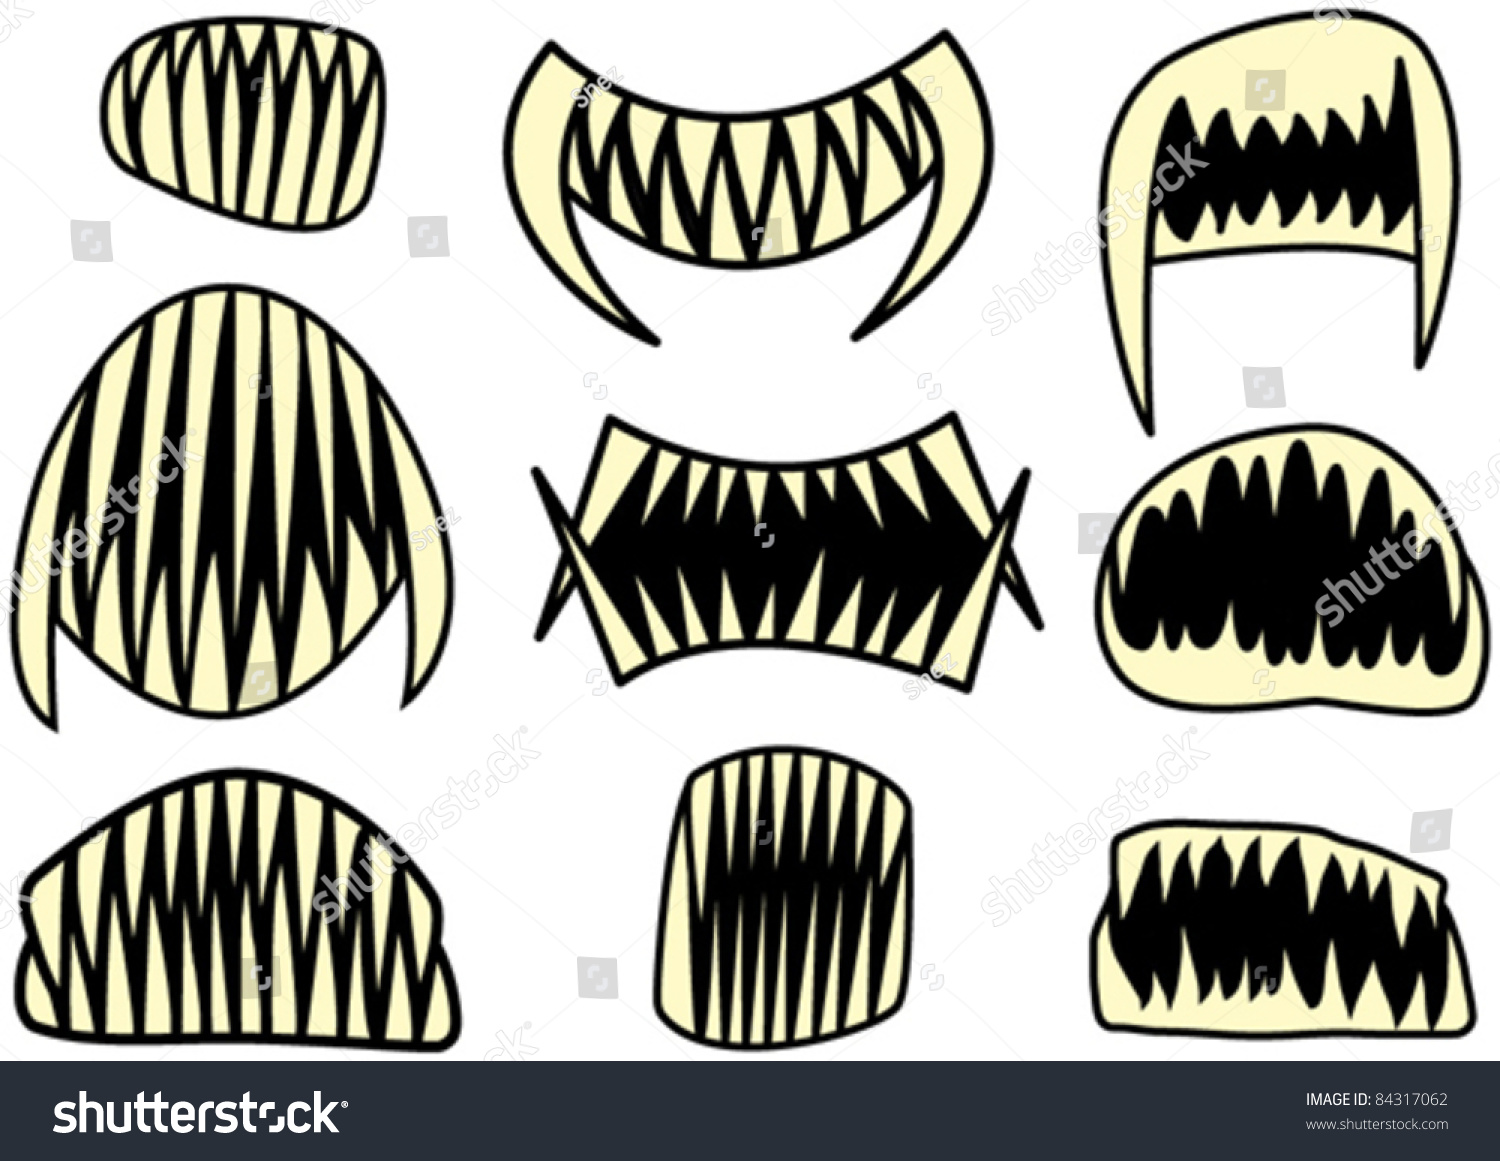 halloween teeth clipart - photo #20